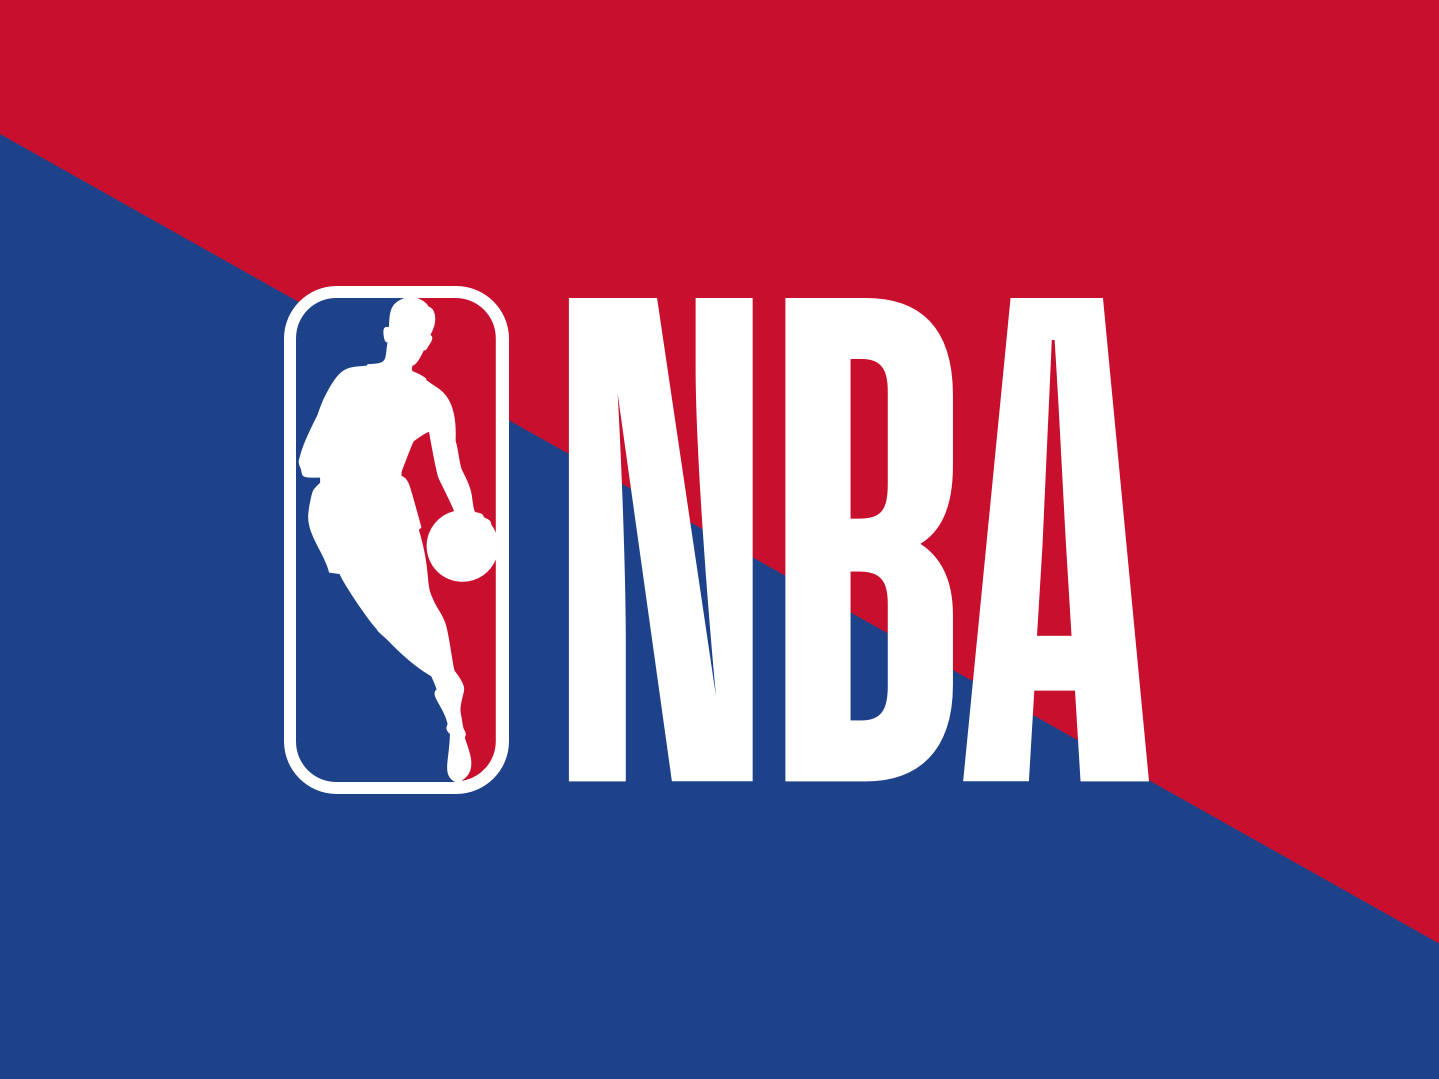 SporTV passa a transmitir partidas da NBA a partir do próximo dia 24